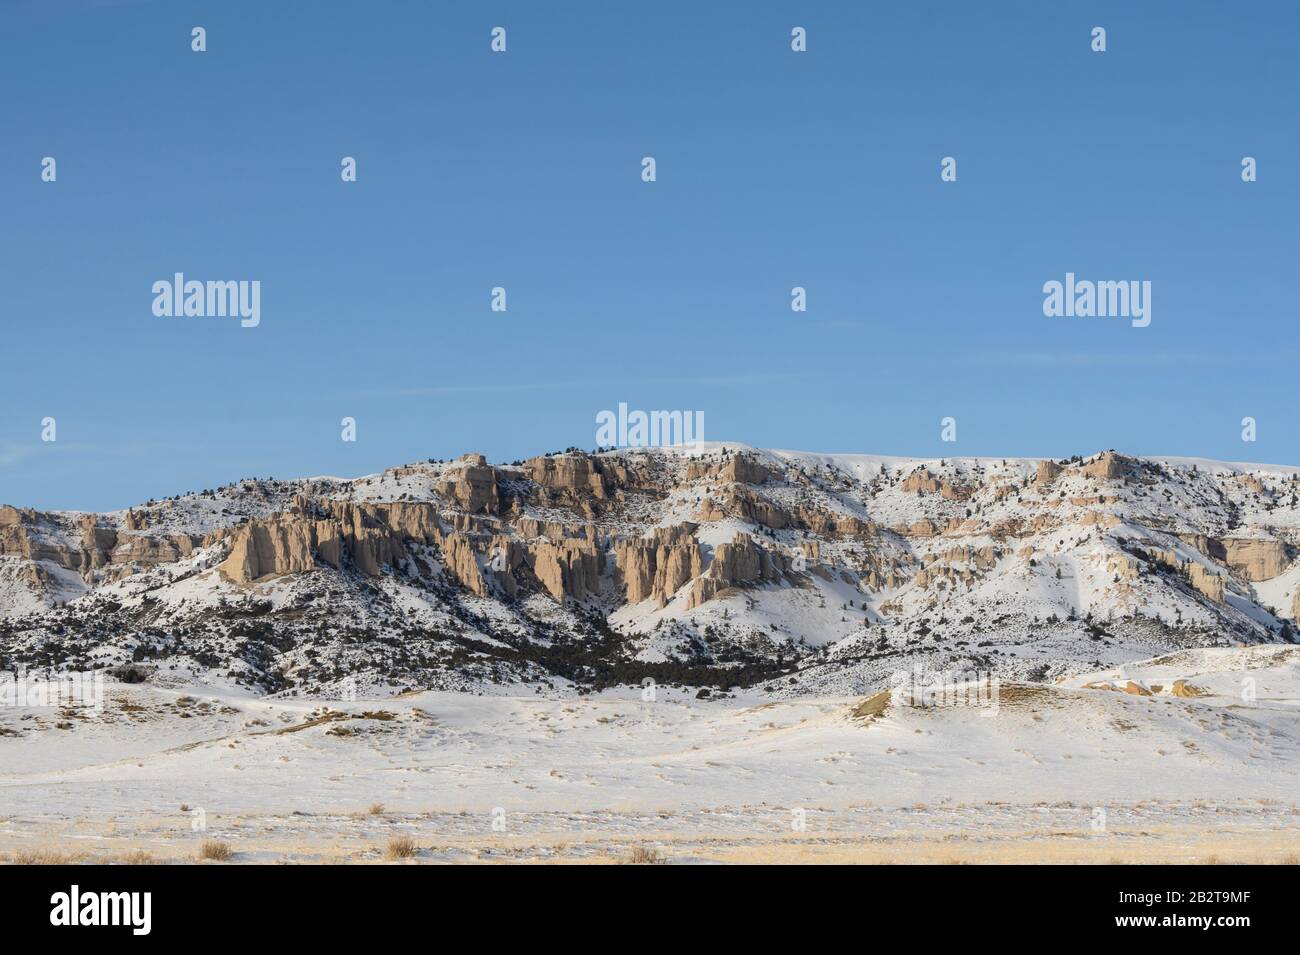 Paysage du Wyoming scène d'une colline enneigée et de l'affleurement rocheux dans une zone rurale. Banque D'Images